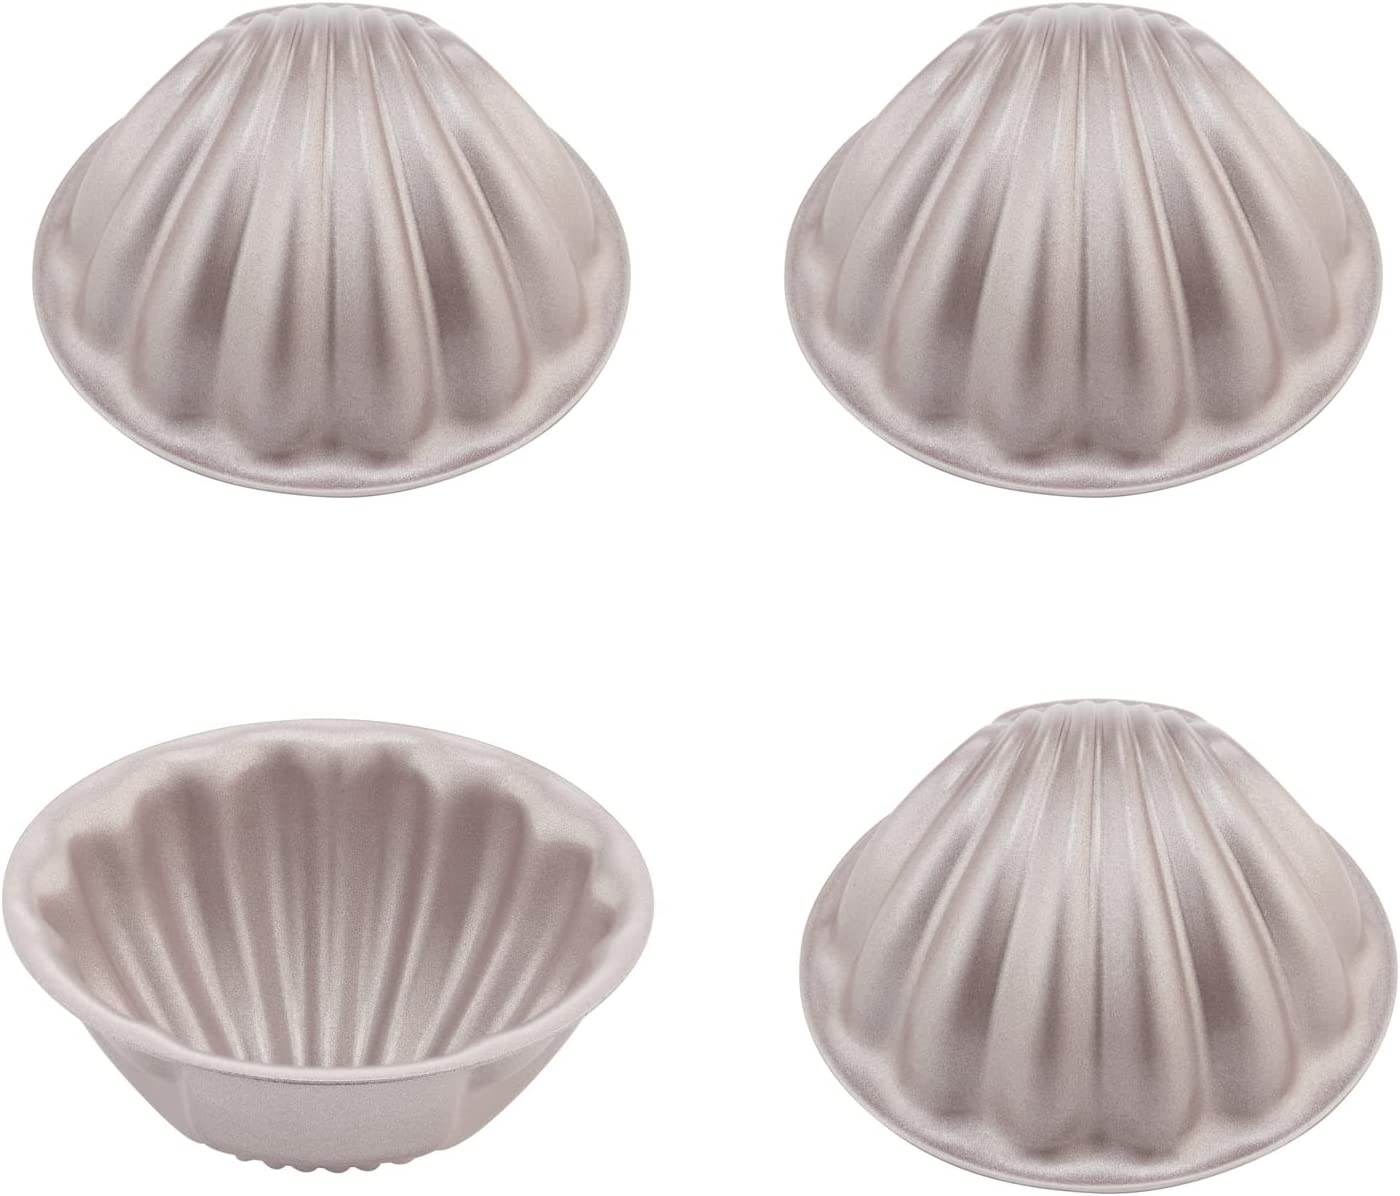 3“ Spherical Shell Madeline 4Pcs